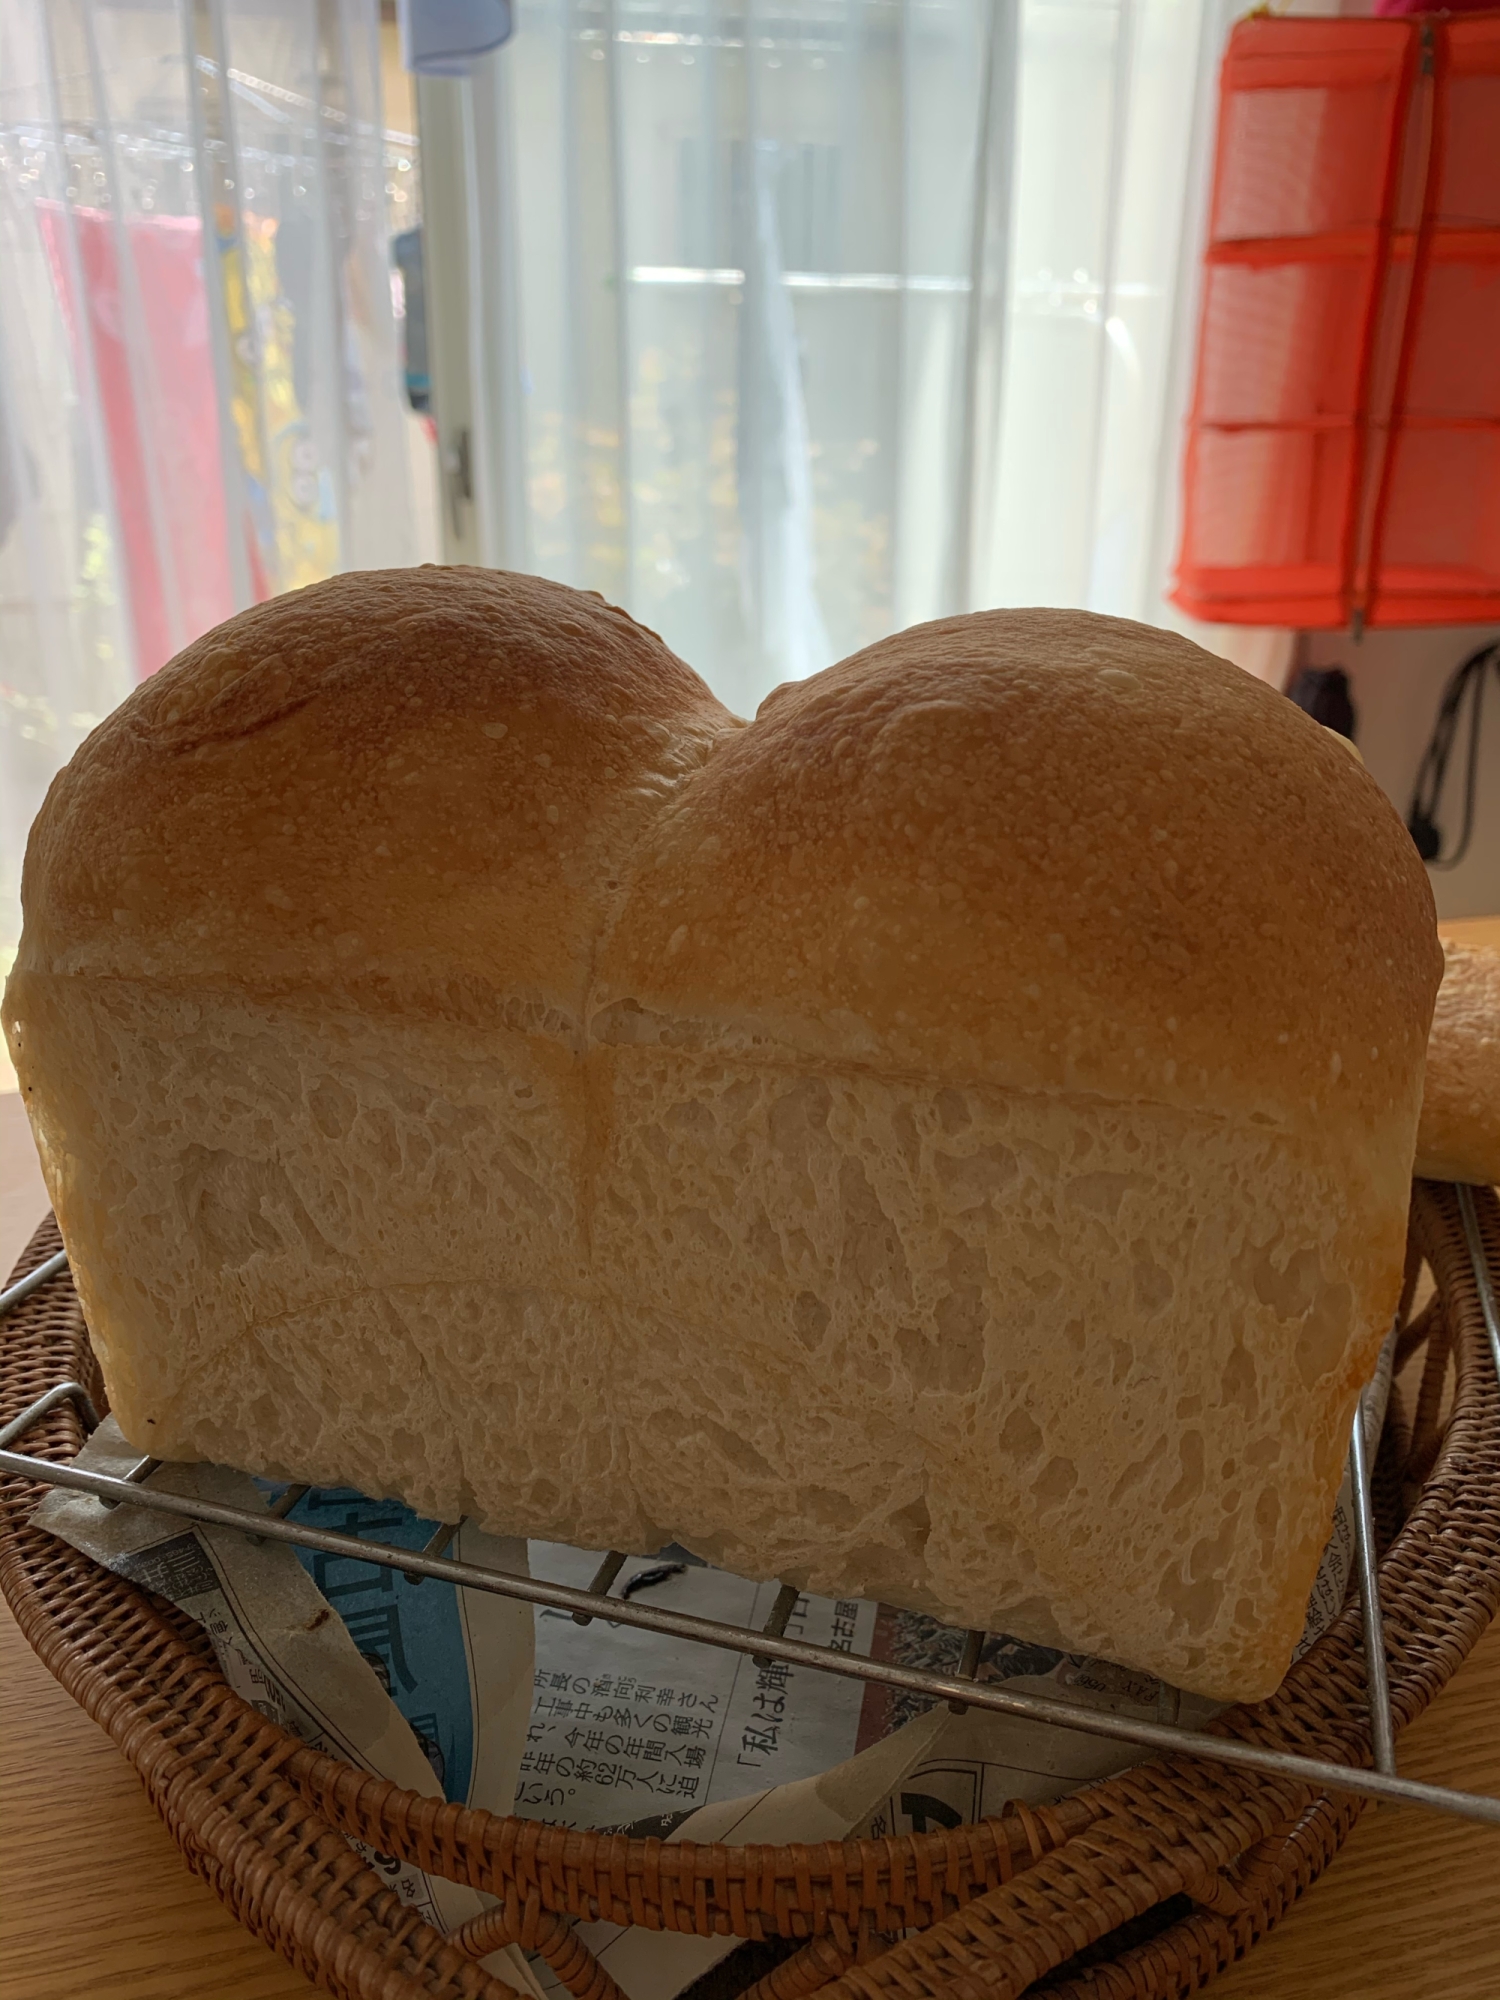 フランスパンの生地で、食パン